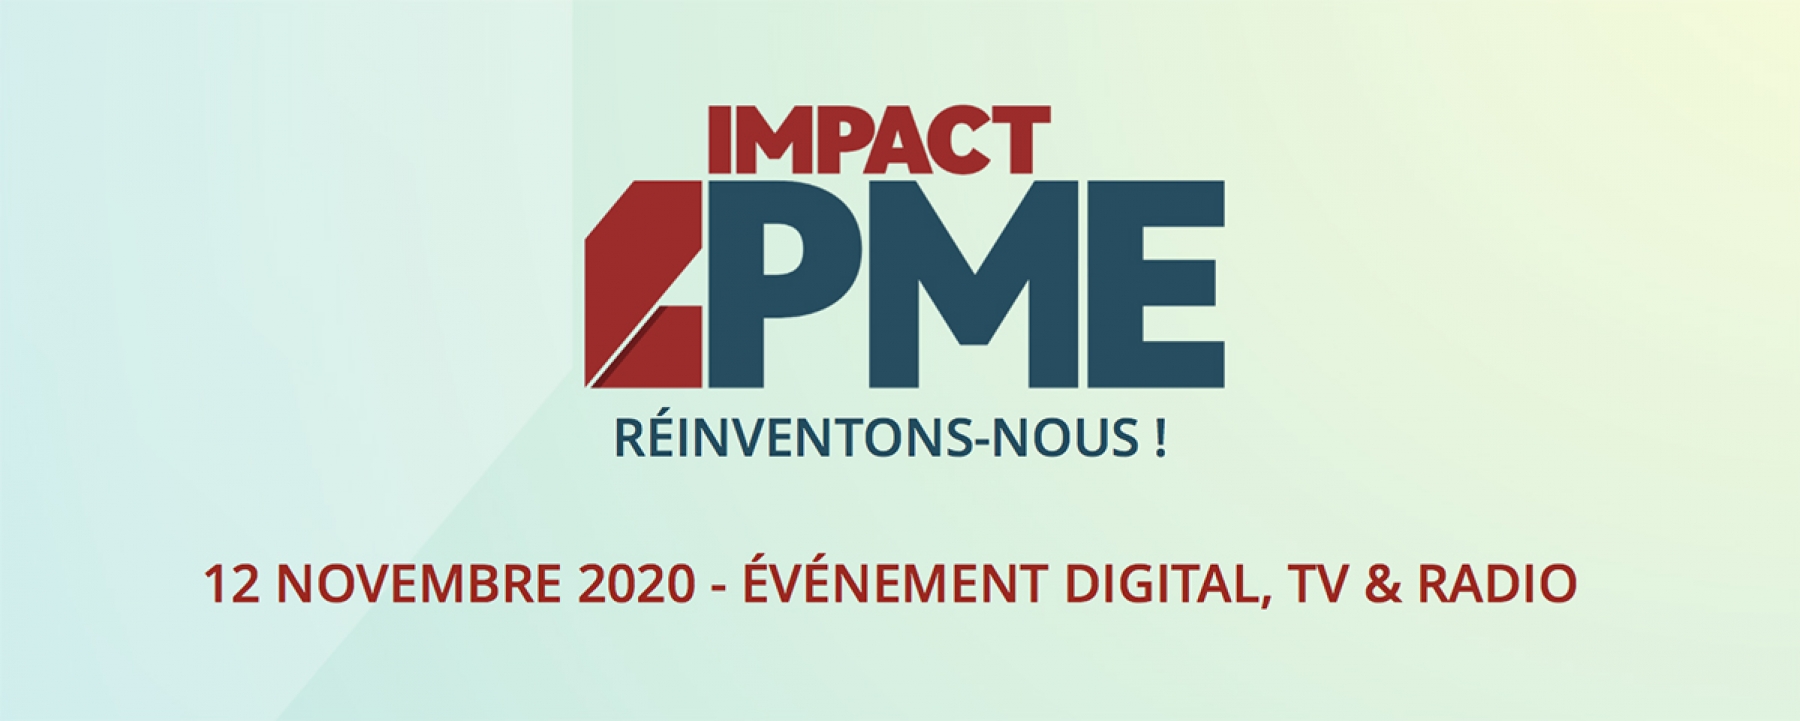 Impact PME - Reinventons-nous !, un événement organisé par BFM Business et CPME le 12 novembre